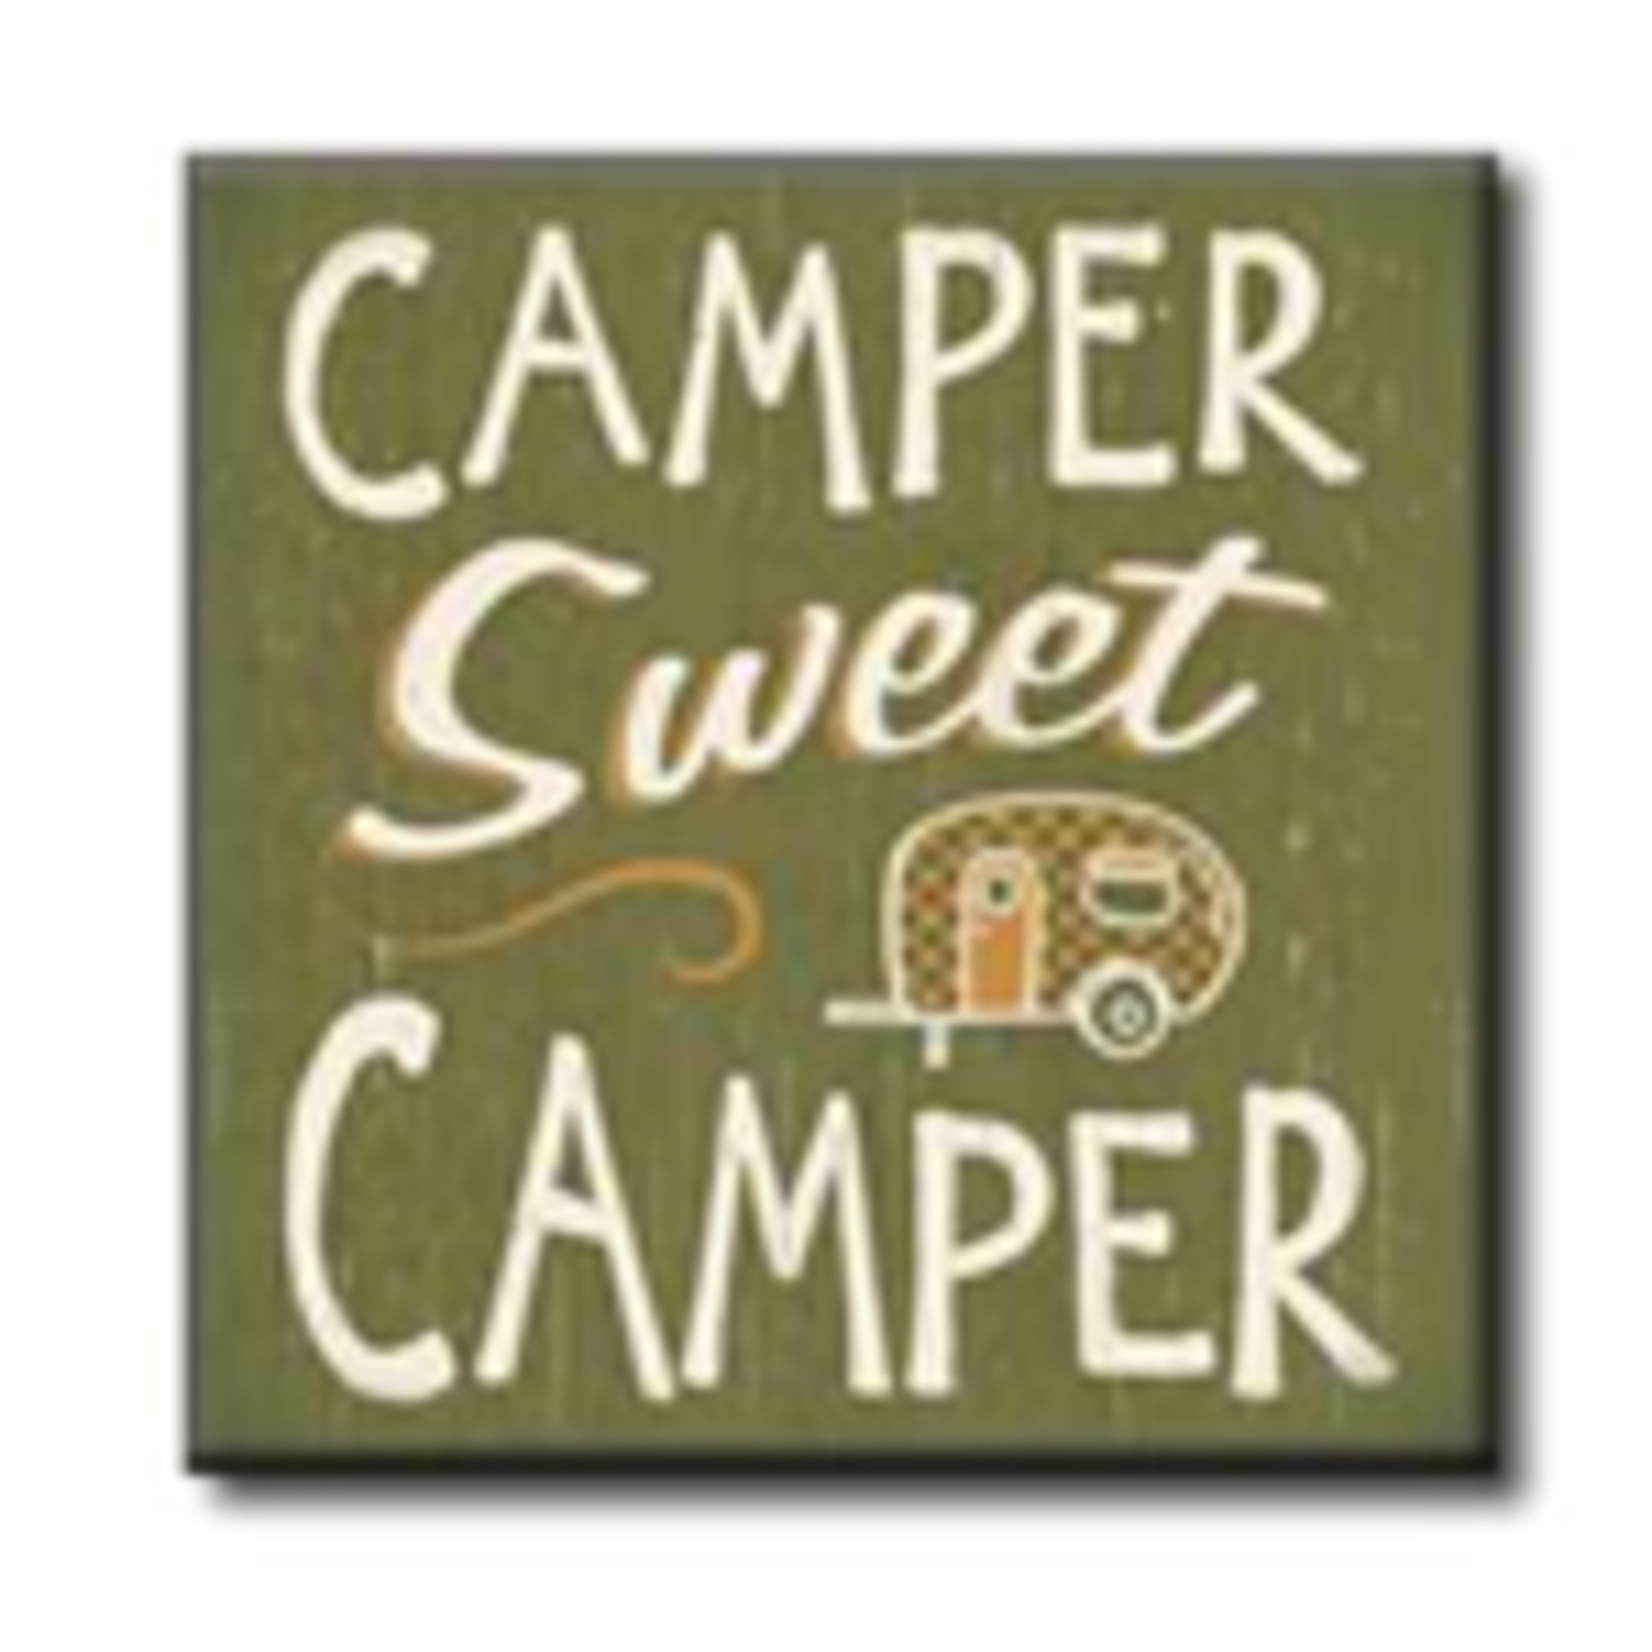 Camper Sweet Camper 4x4